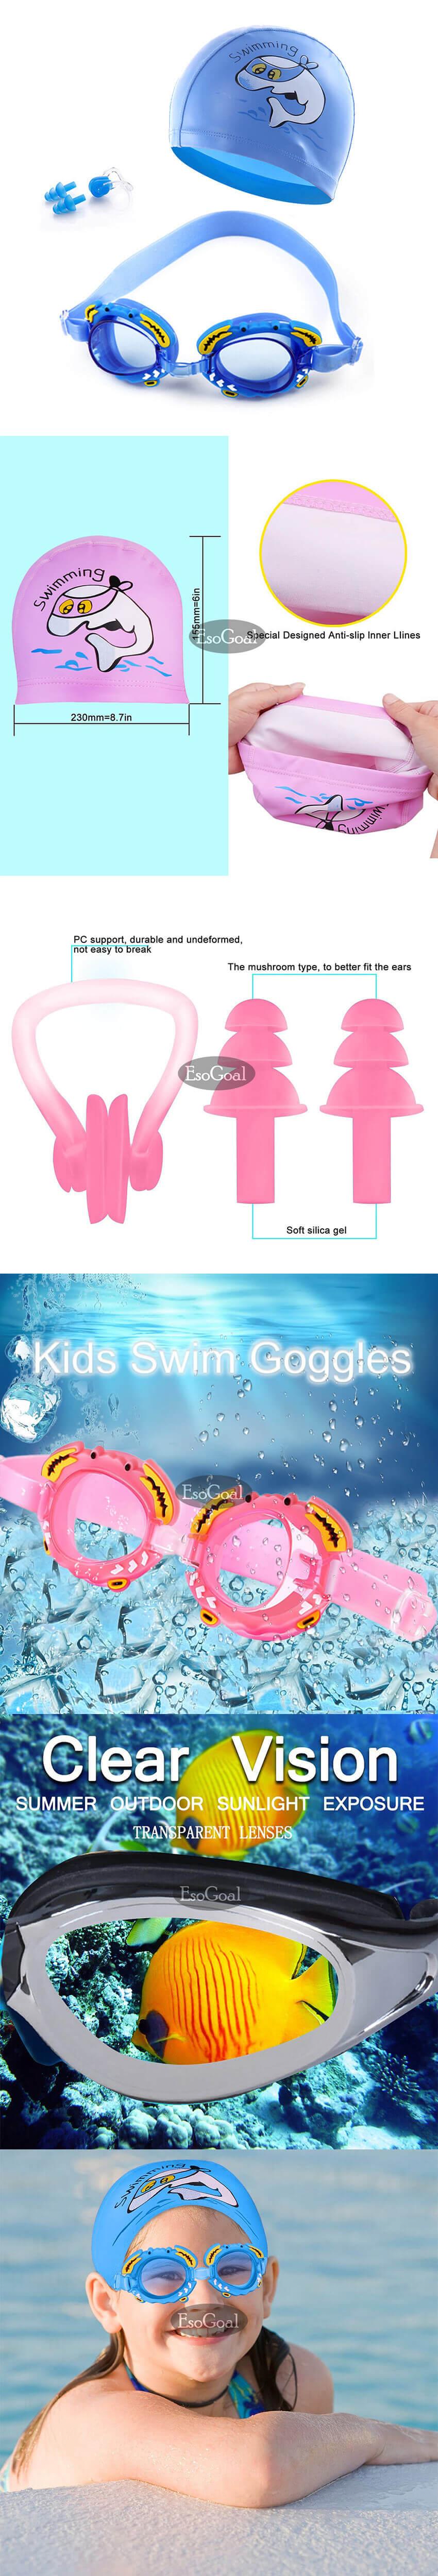 ข้อมูลประกอบของ ชุดแว่นตาว่ายน้ำเด็ก ชุดเด็กชาย และเด็กหญิง แว่นตา อุปกรณ์ว่ายน้ำเด็ก ป้องกันหมอก แว่นตาว่ายน้ำ กันน้ำ หมวกว่ายน้ำ